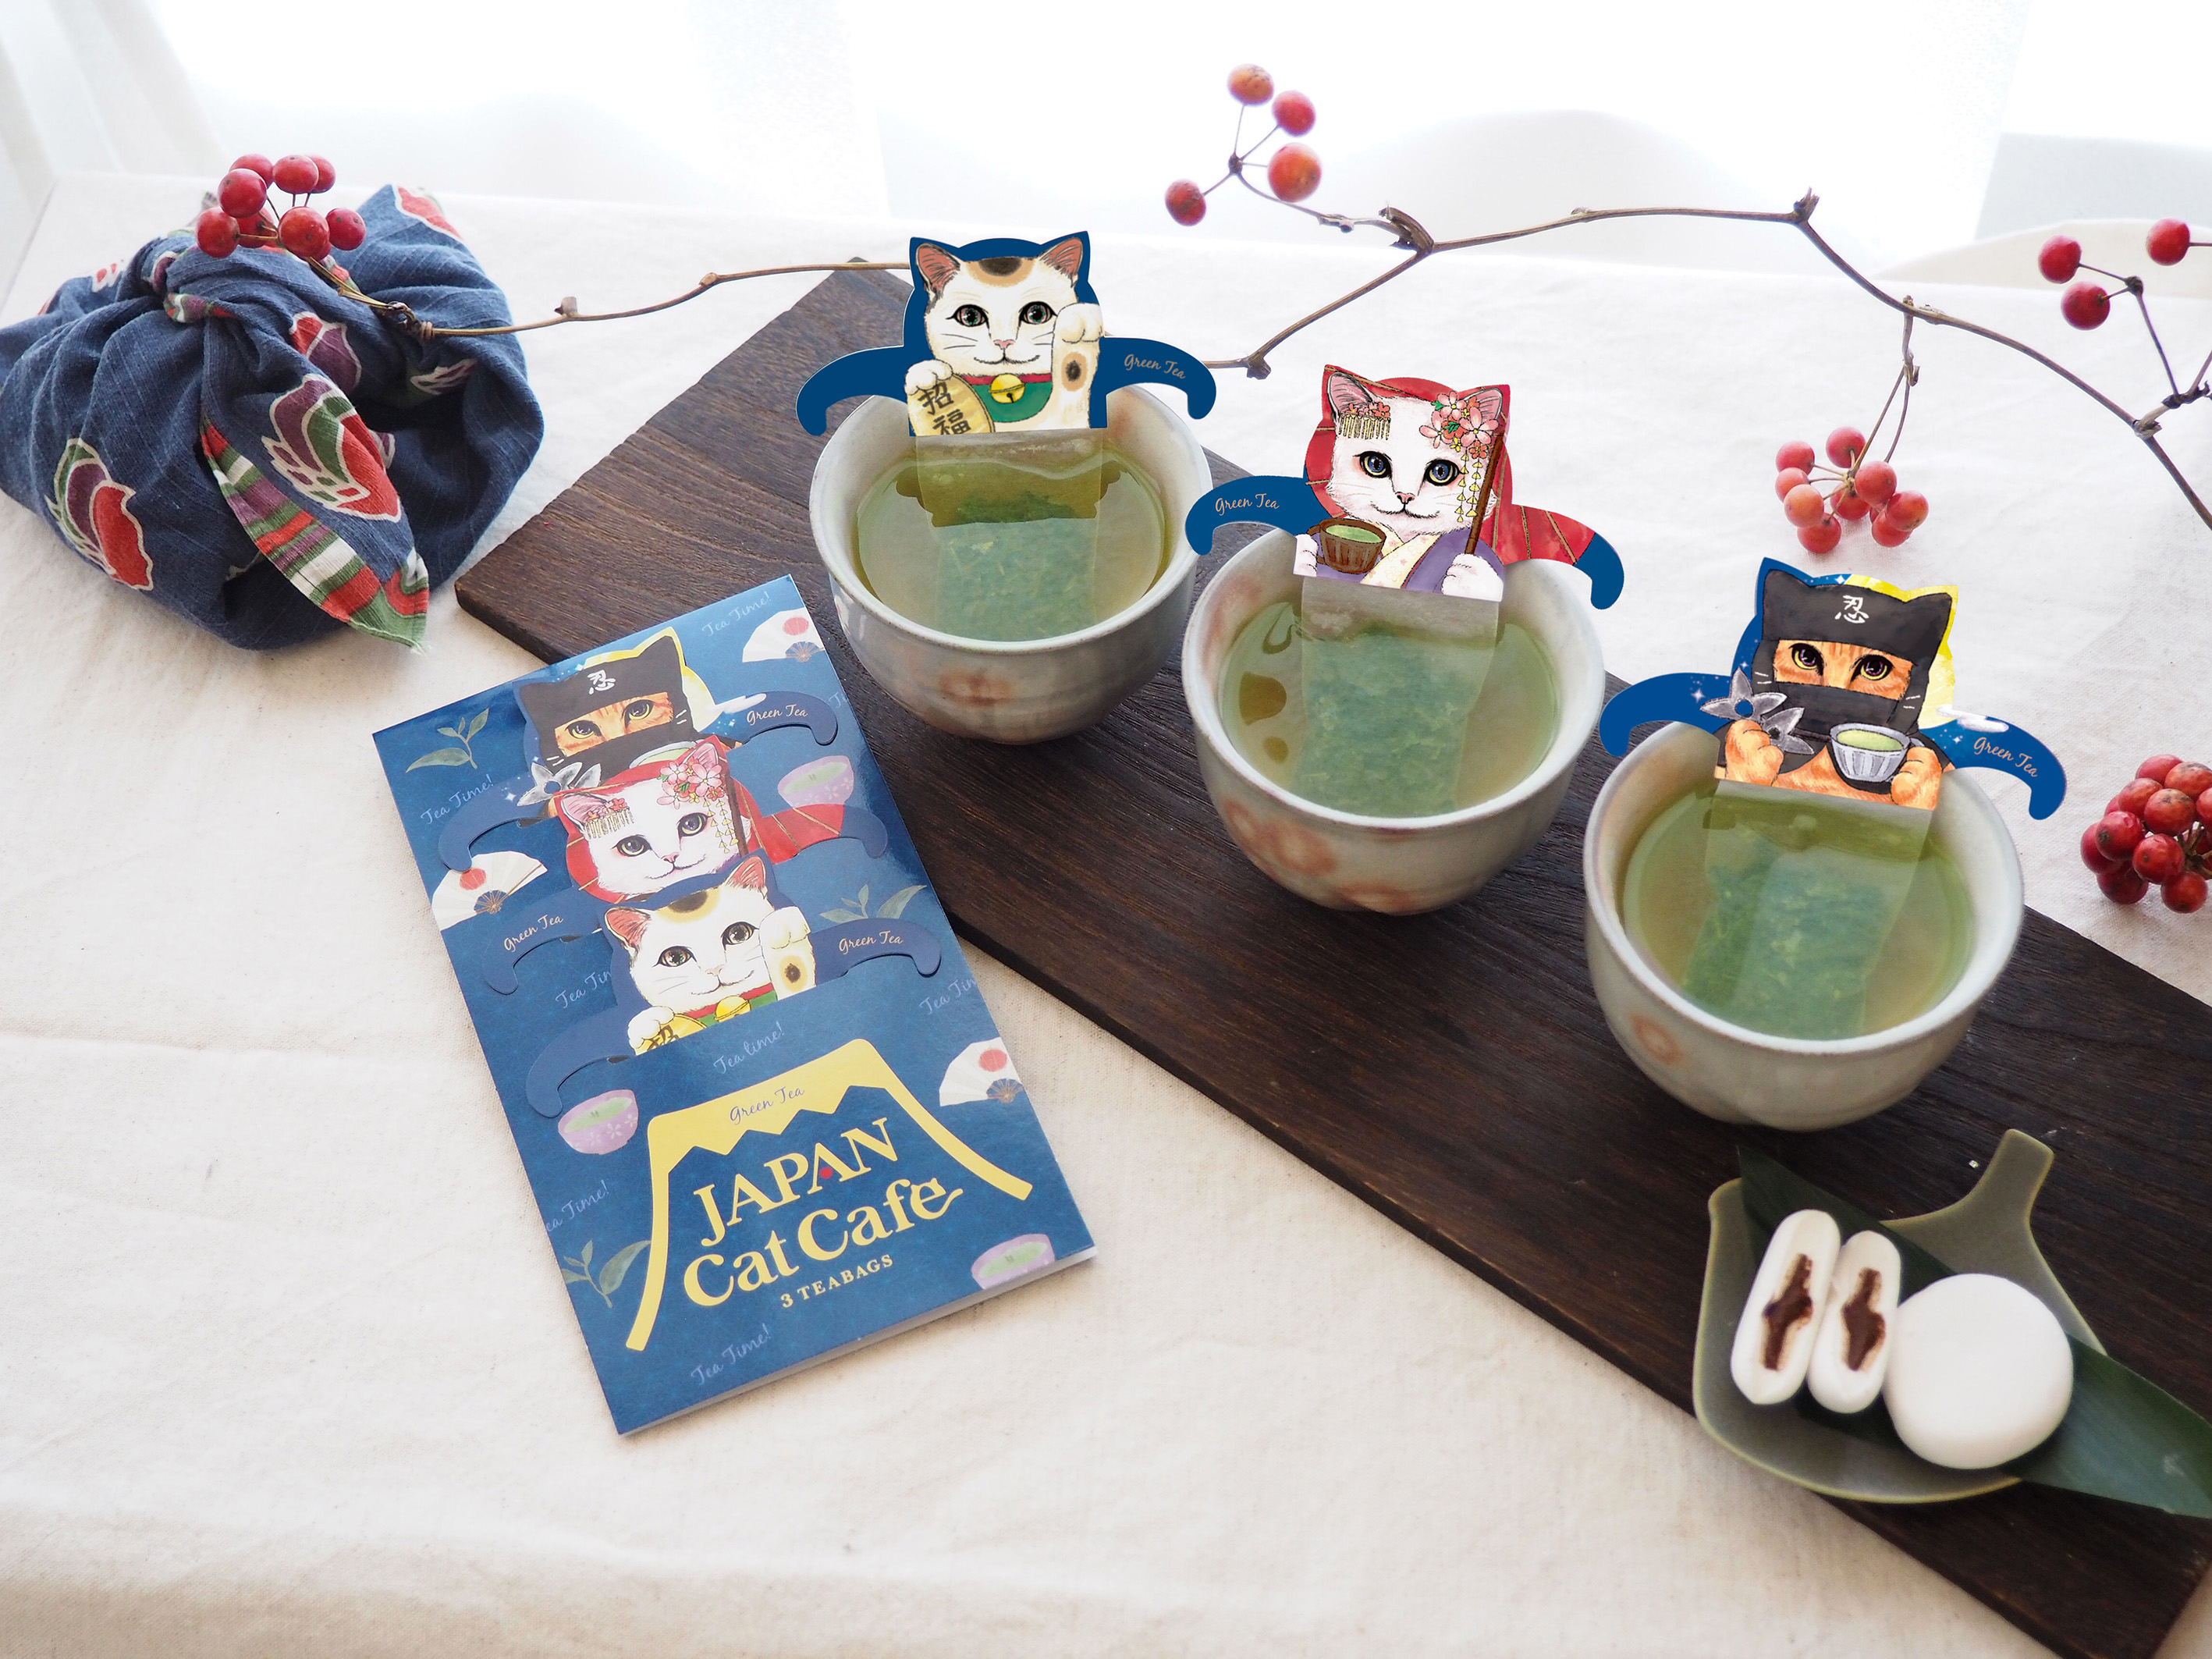 日本の伝統的なキャラクターに扮したネコ達が集合 招き猫 舞妓猫 忍者猫と一緒にほっこり緑茶ティータイムはいかがですか 初の 和 テイスト キャット カフェシリーズ ジャパンキャットカフェ 発売 日本緑茶センター株式会社のプレスリリース